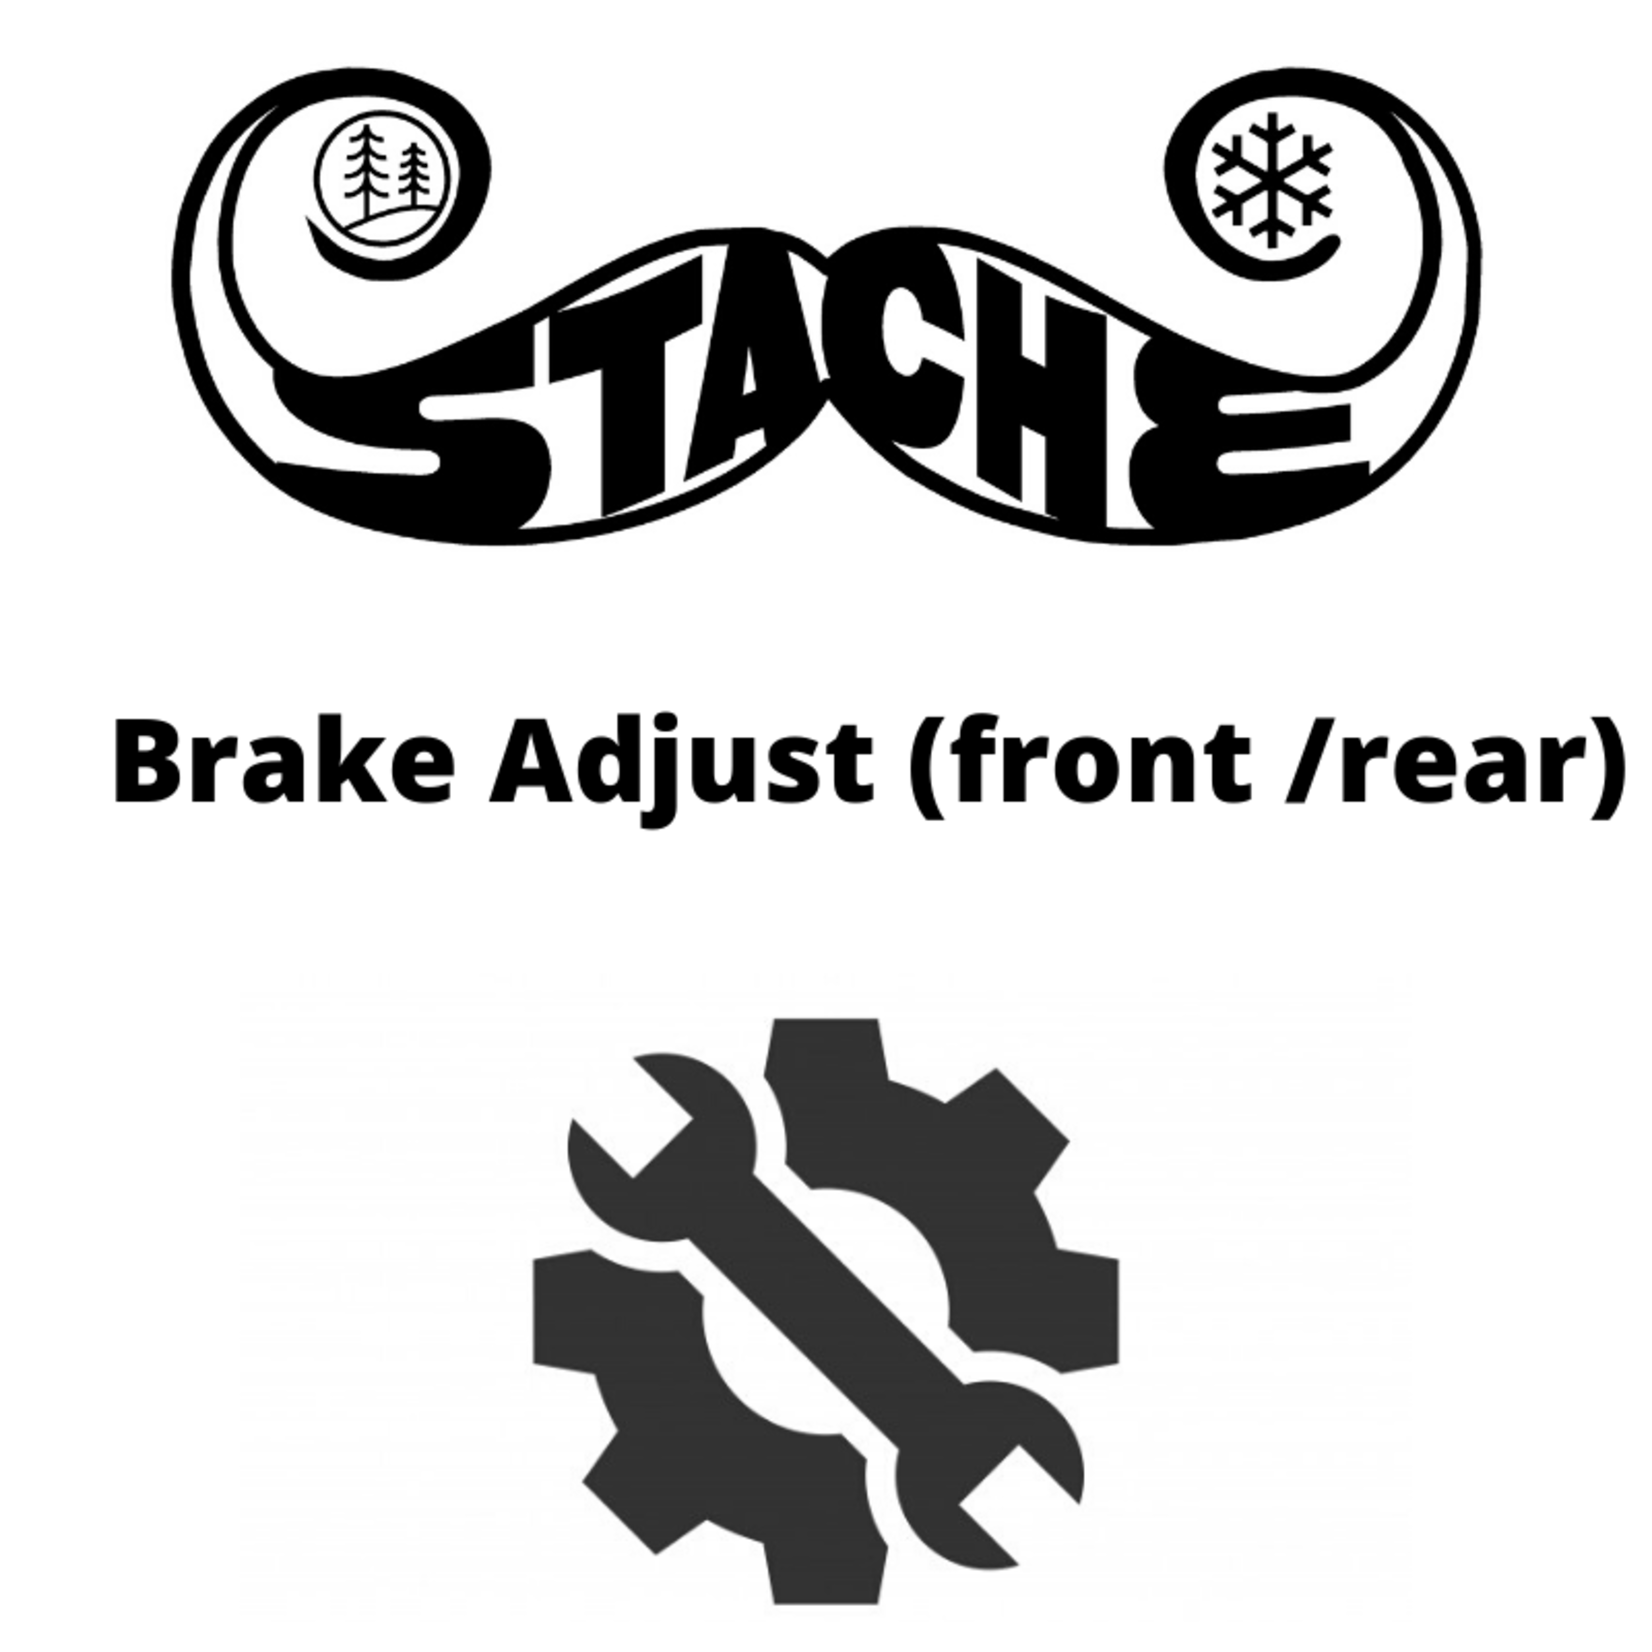 Brake adjust (front)